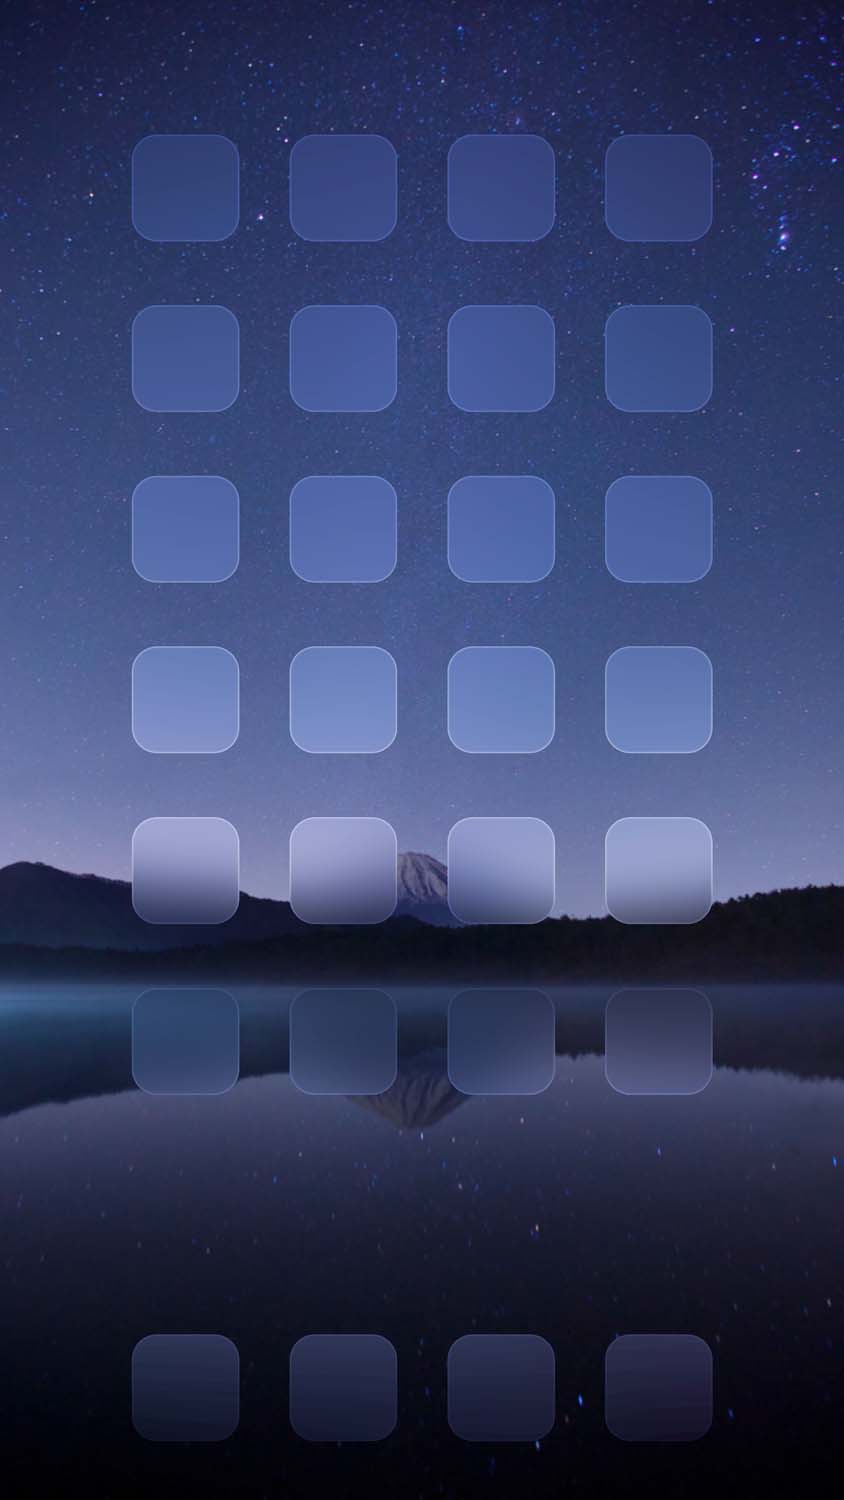 iOS Dock Night Lake iPhone Wallpaper HD